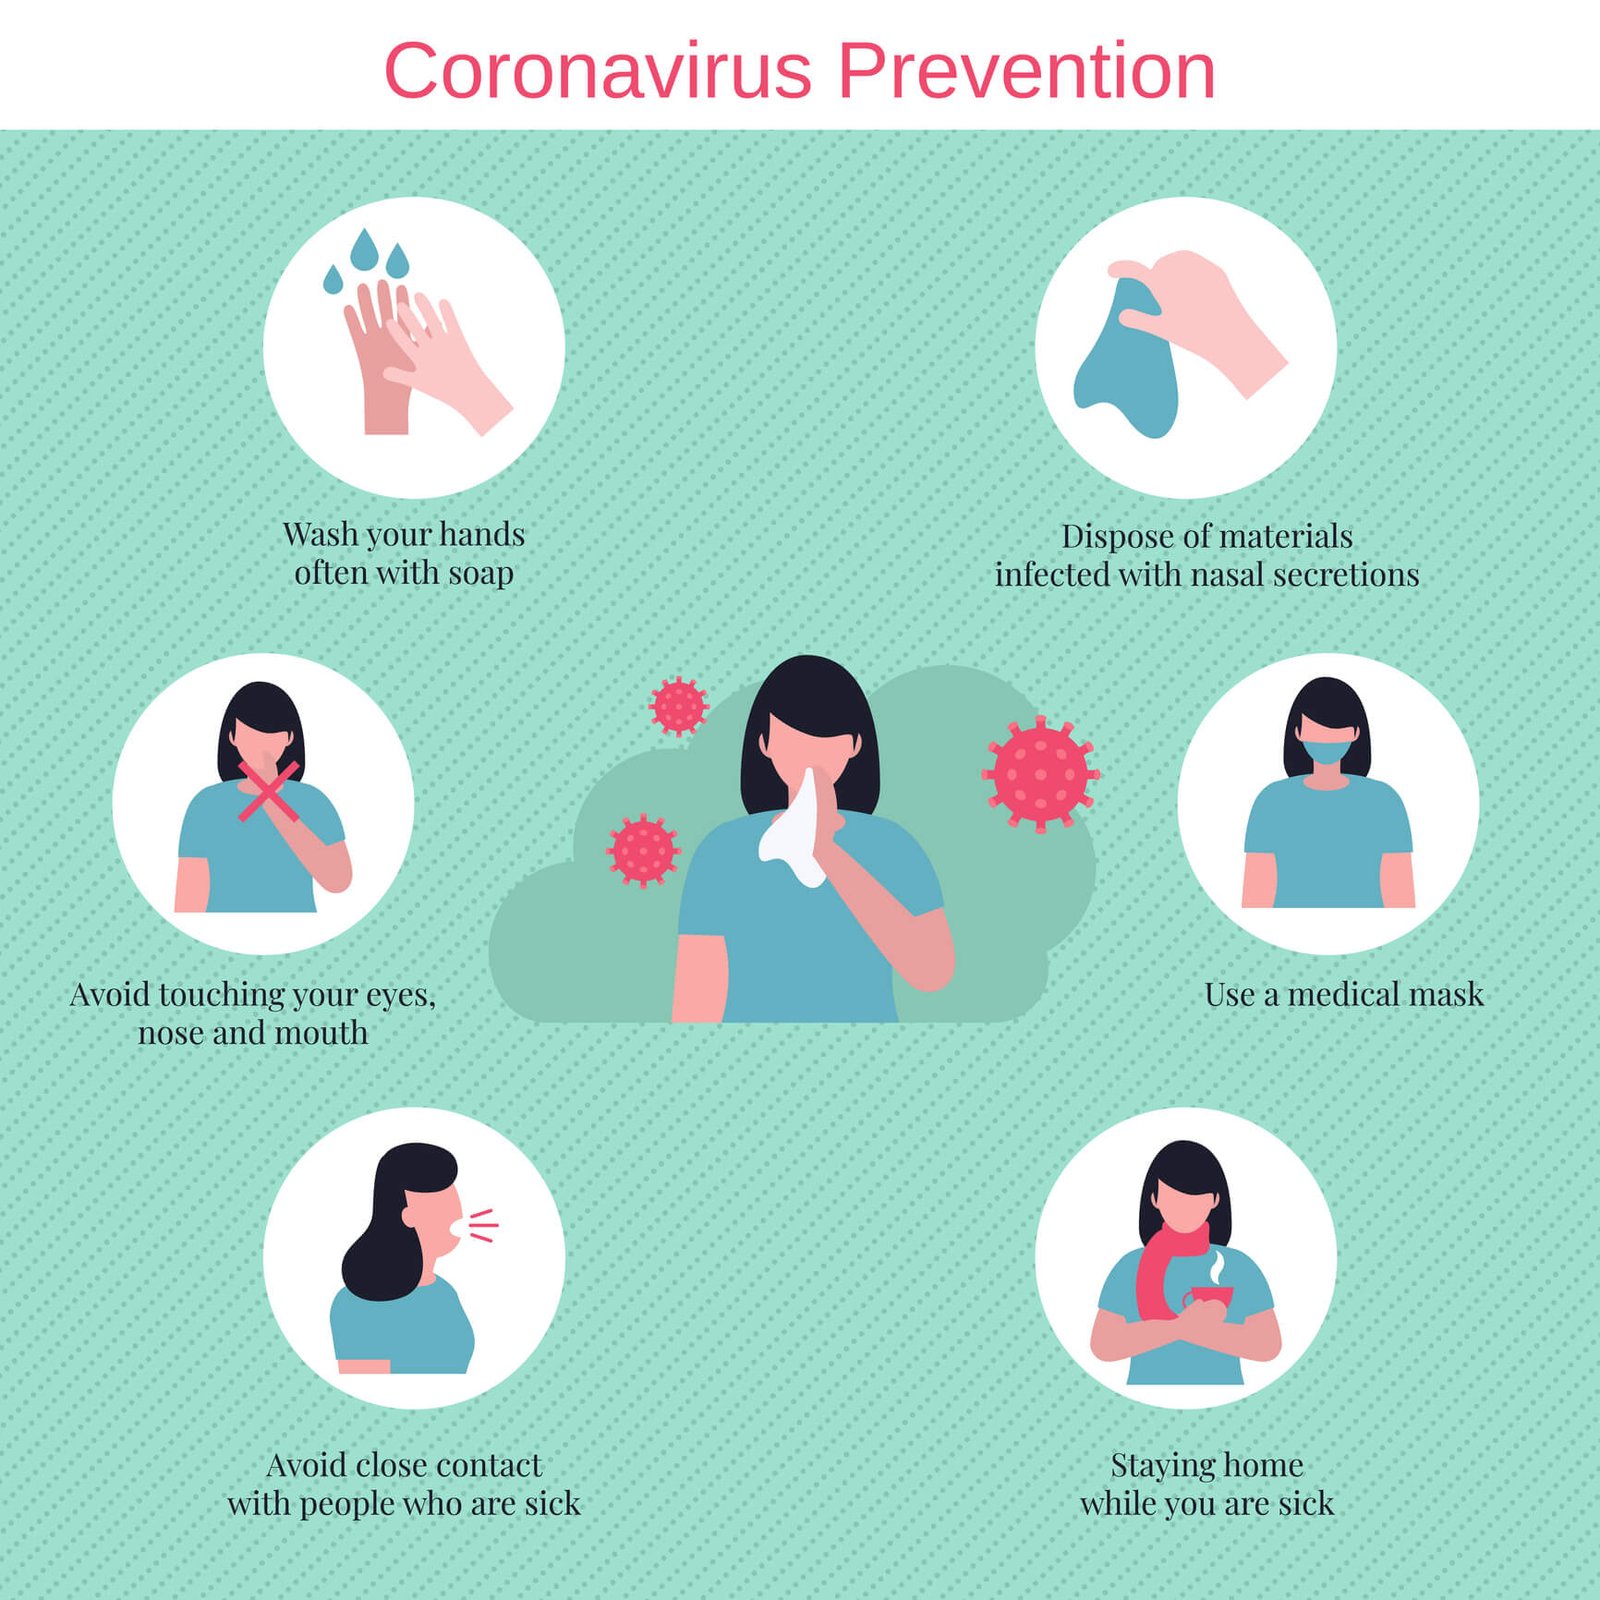 precautions of coronavirus